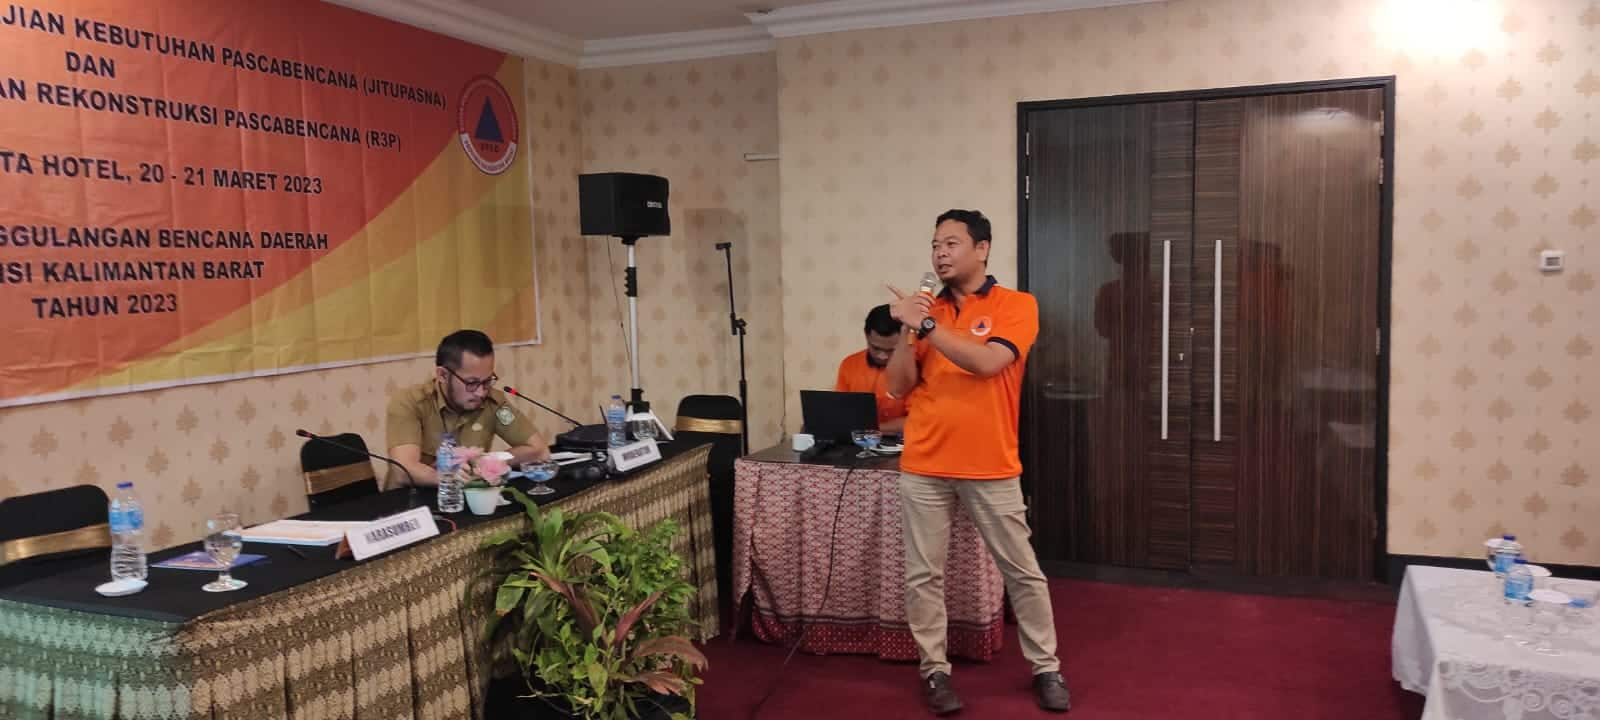 BPBD Provinsi Kalbar menggelar sosialisasi sekaligus pendampingan petugas pengkajian terkait kebutuhan, rencana rehabilitasi dan rekonstruksi pasca bencana, di Hotel Mahkota Pontianak, tanggal 20 - 21 Maret 2023. (Foto: Jauhari)